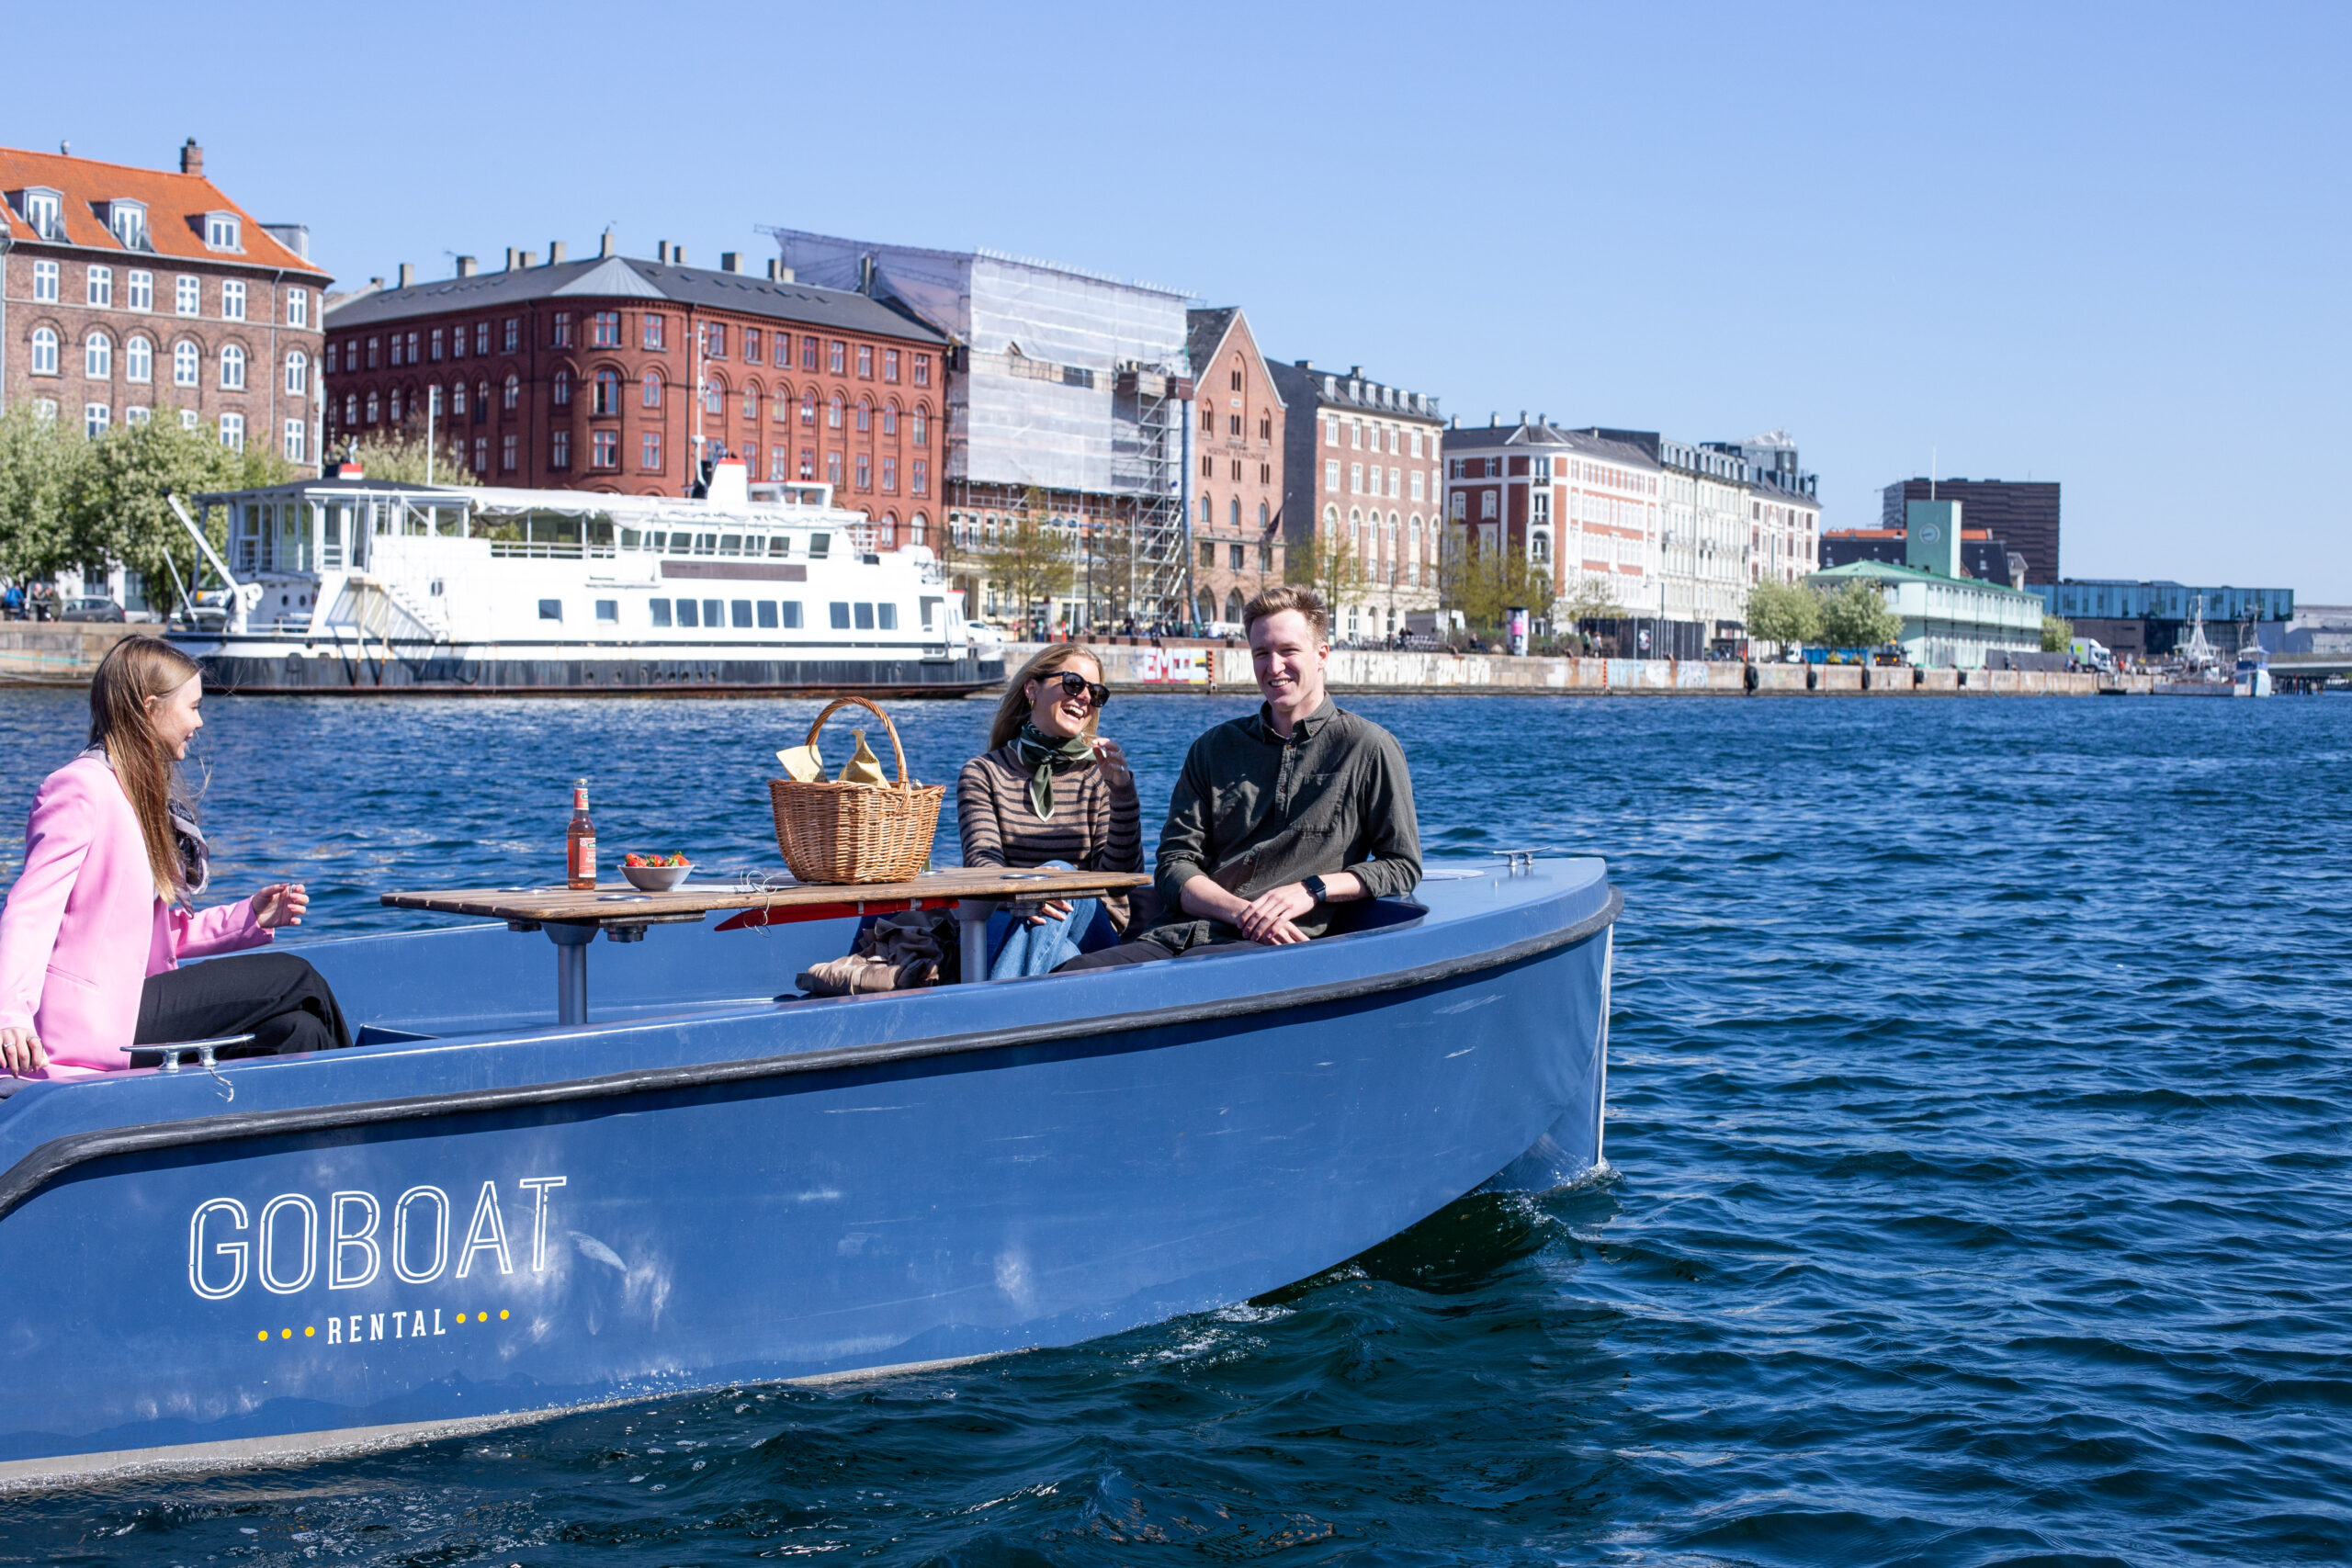 GoBoat bådudlejning for alle. Vær din egen kaptajn! - GoBoat Denmark